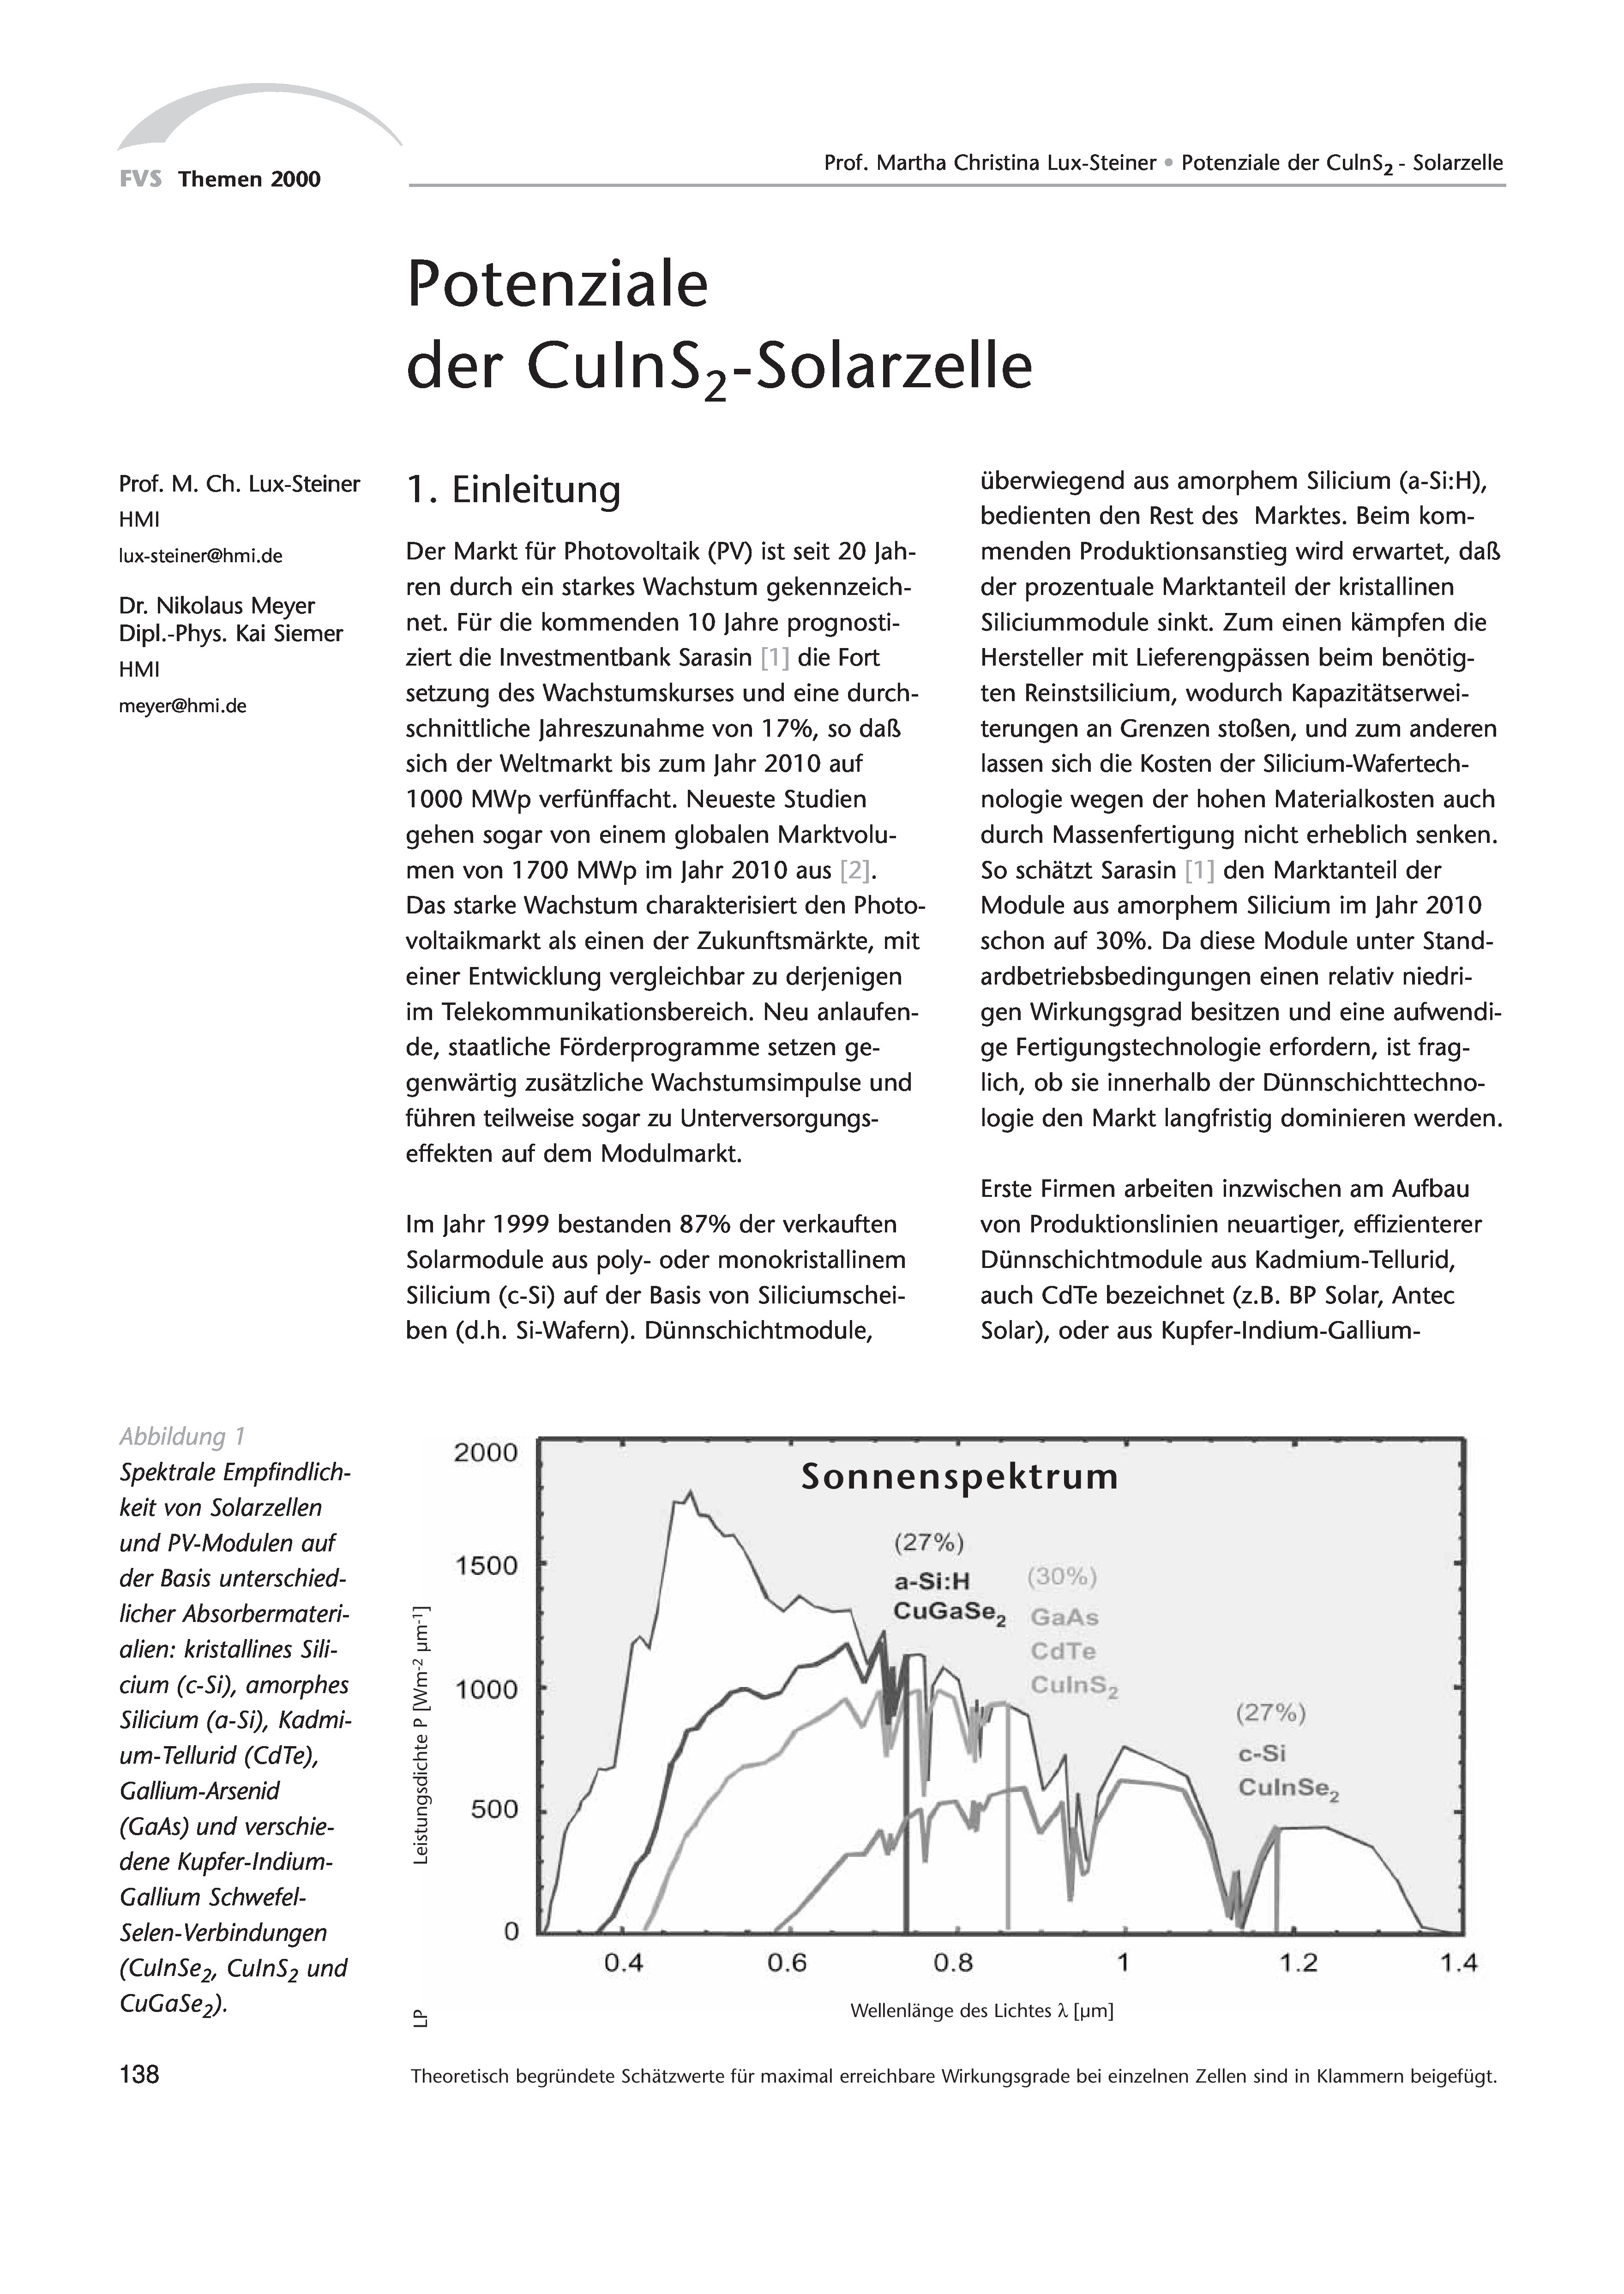 Themen 2000: Sonne - Die Energie des 21. Jahrhunderts